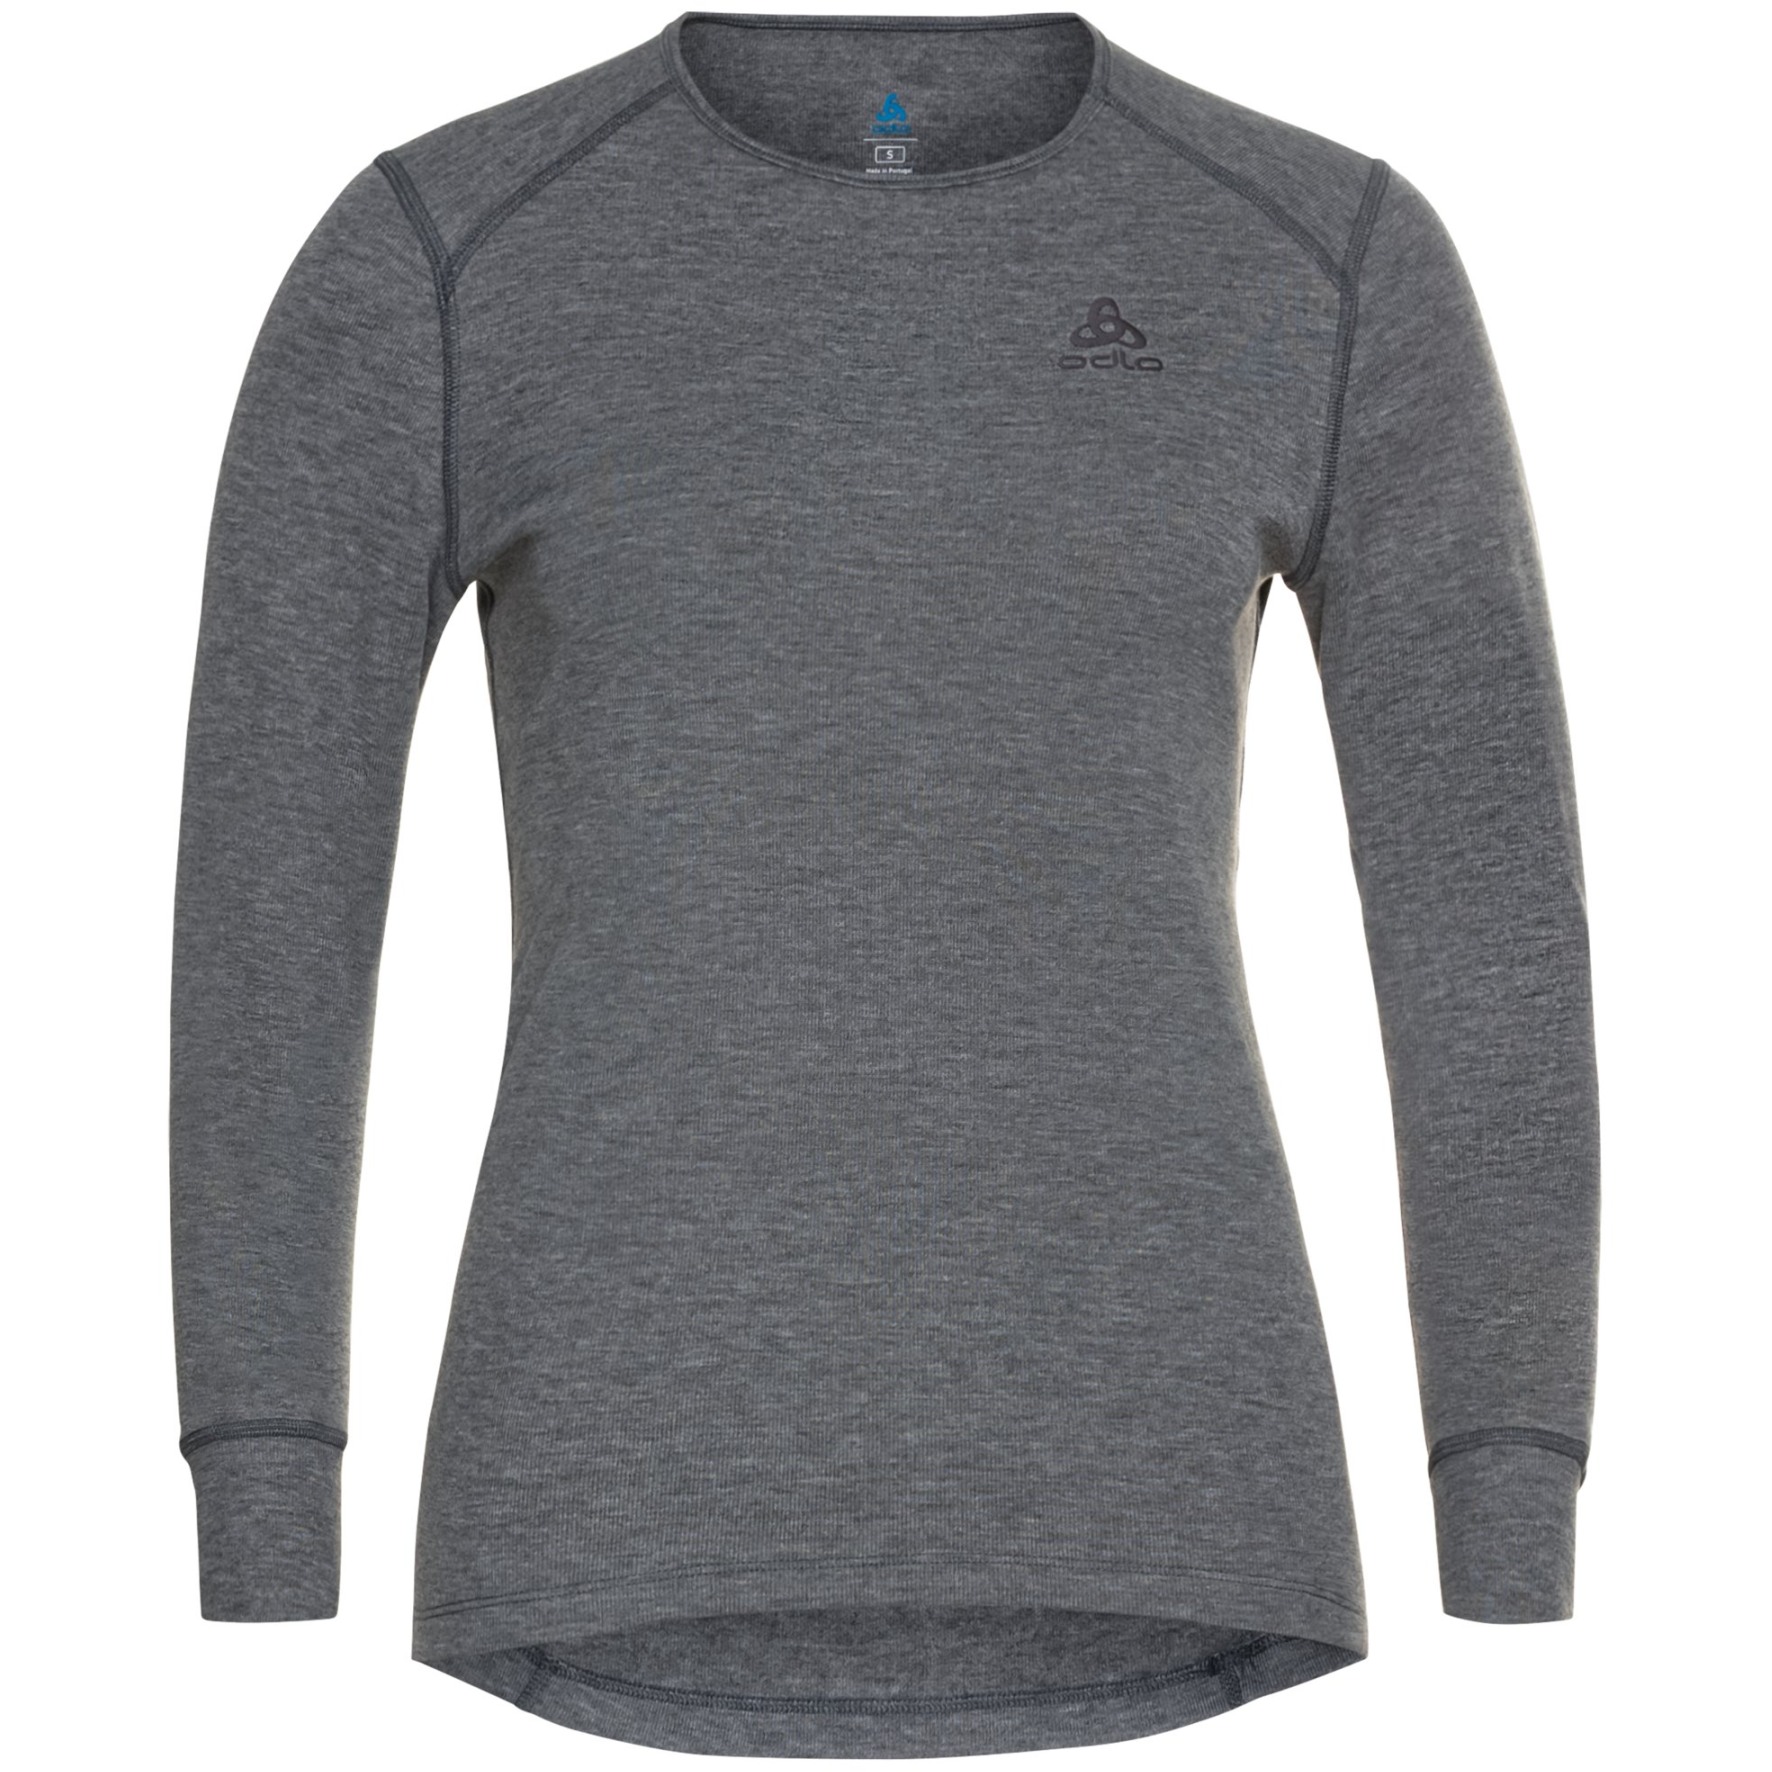 Produktbild von Odlo Active Warm Langarm-Unterhemd Damen - odlo steel grey melange